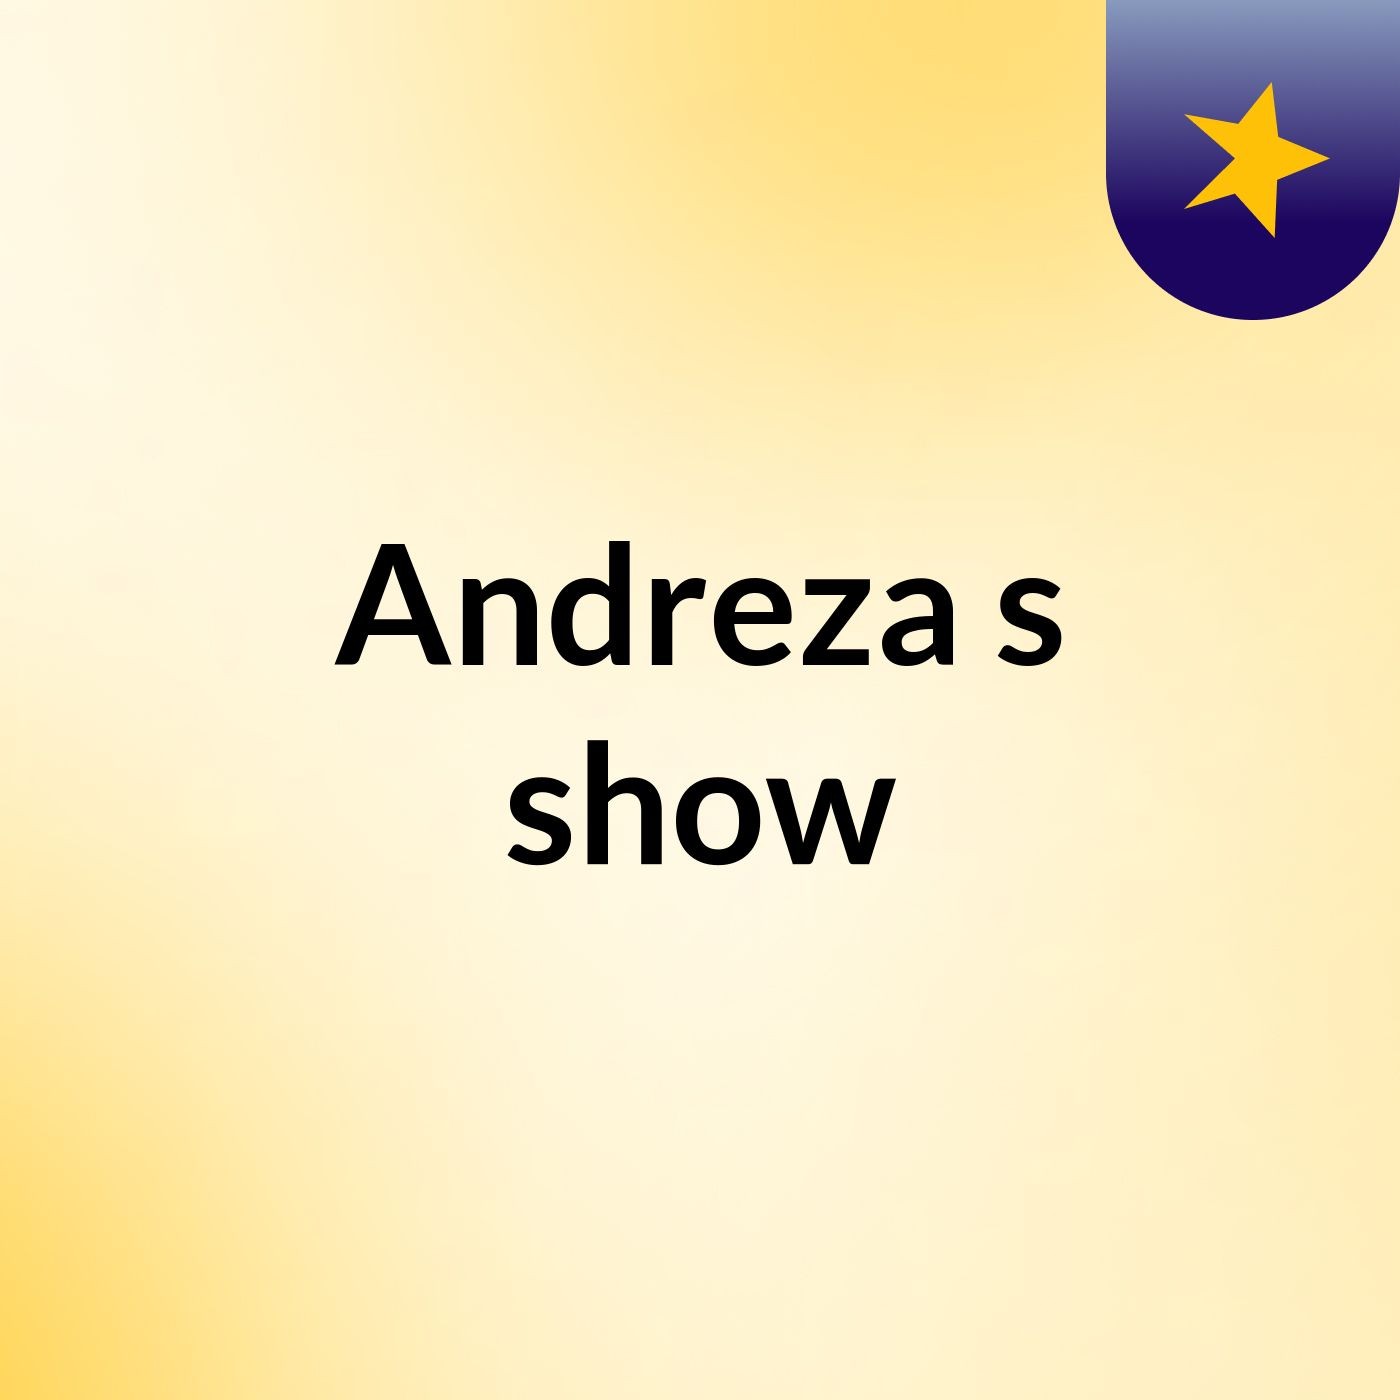 Andreza's show